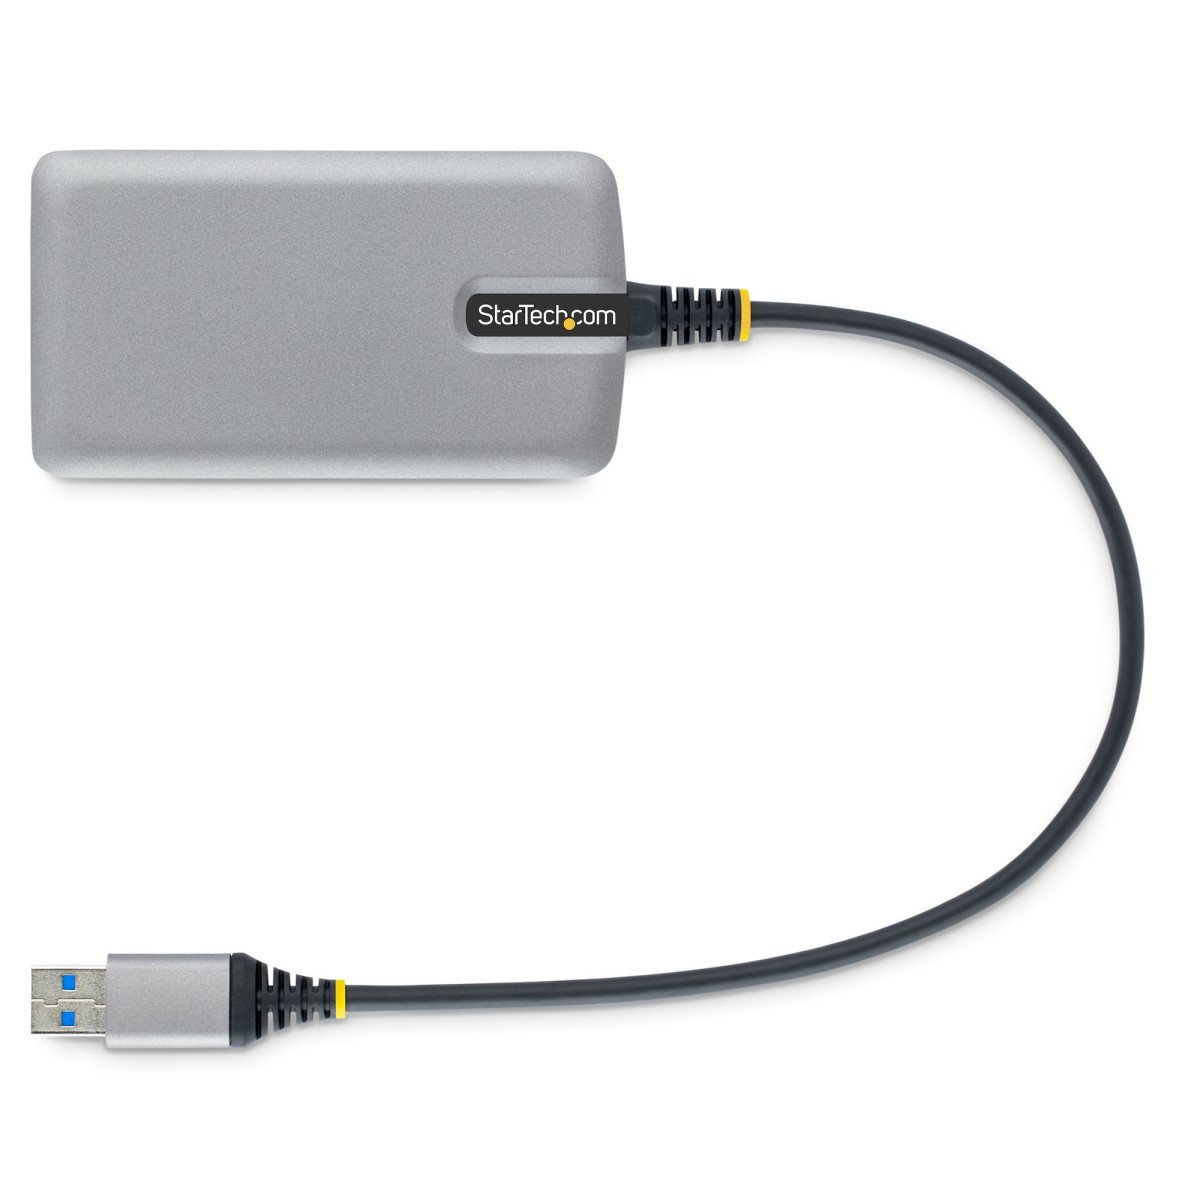 3-Port USB Hub w/ GbE Ethernet Adapter